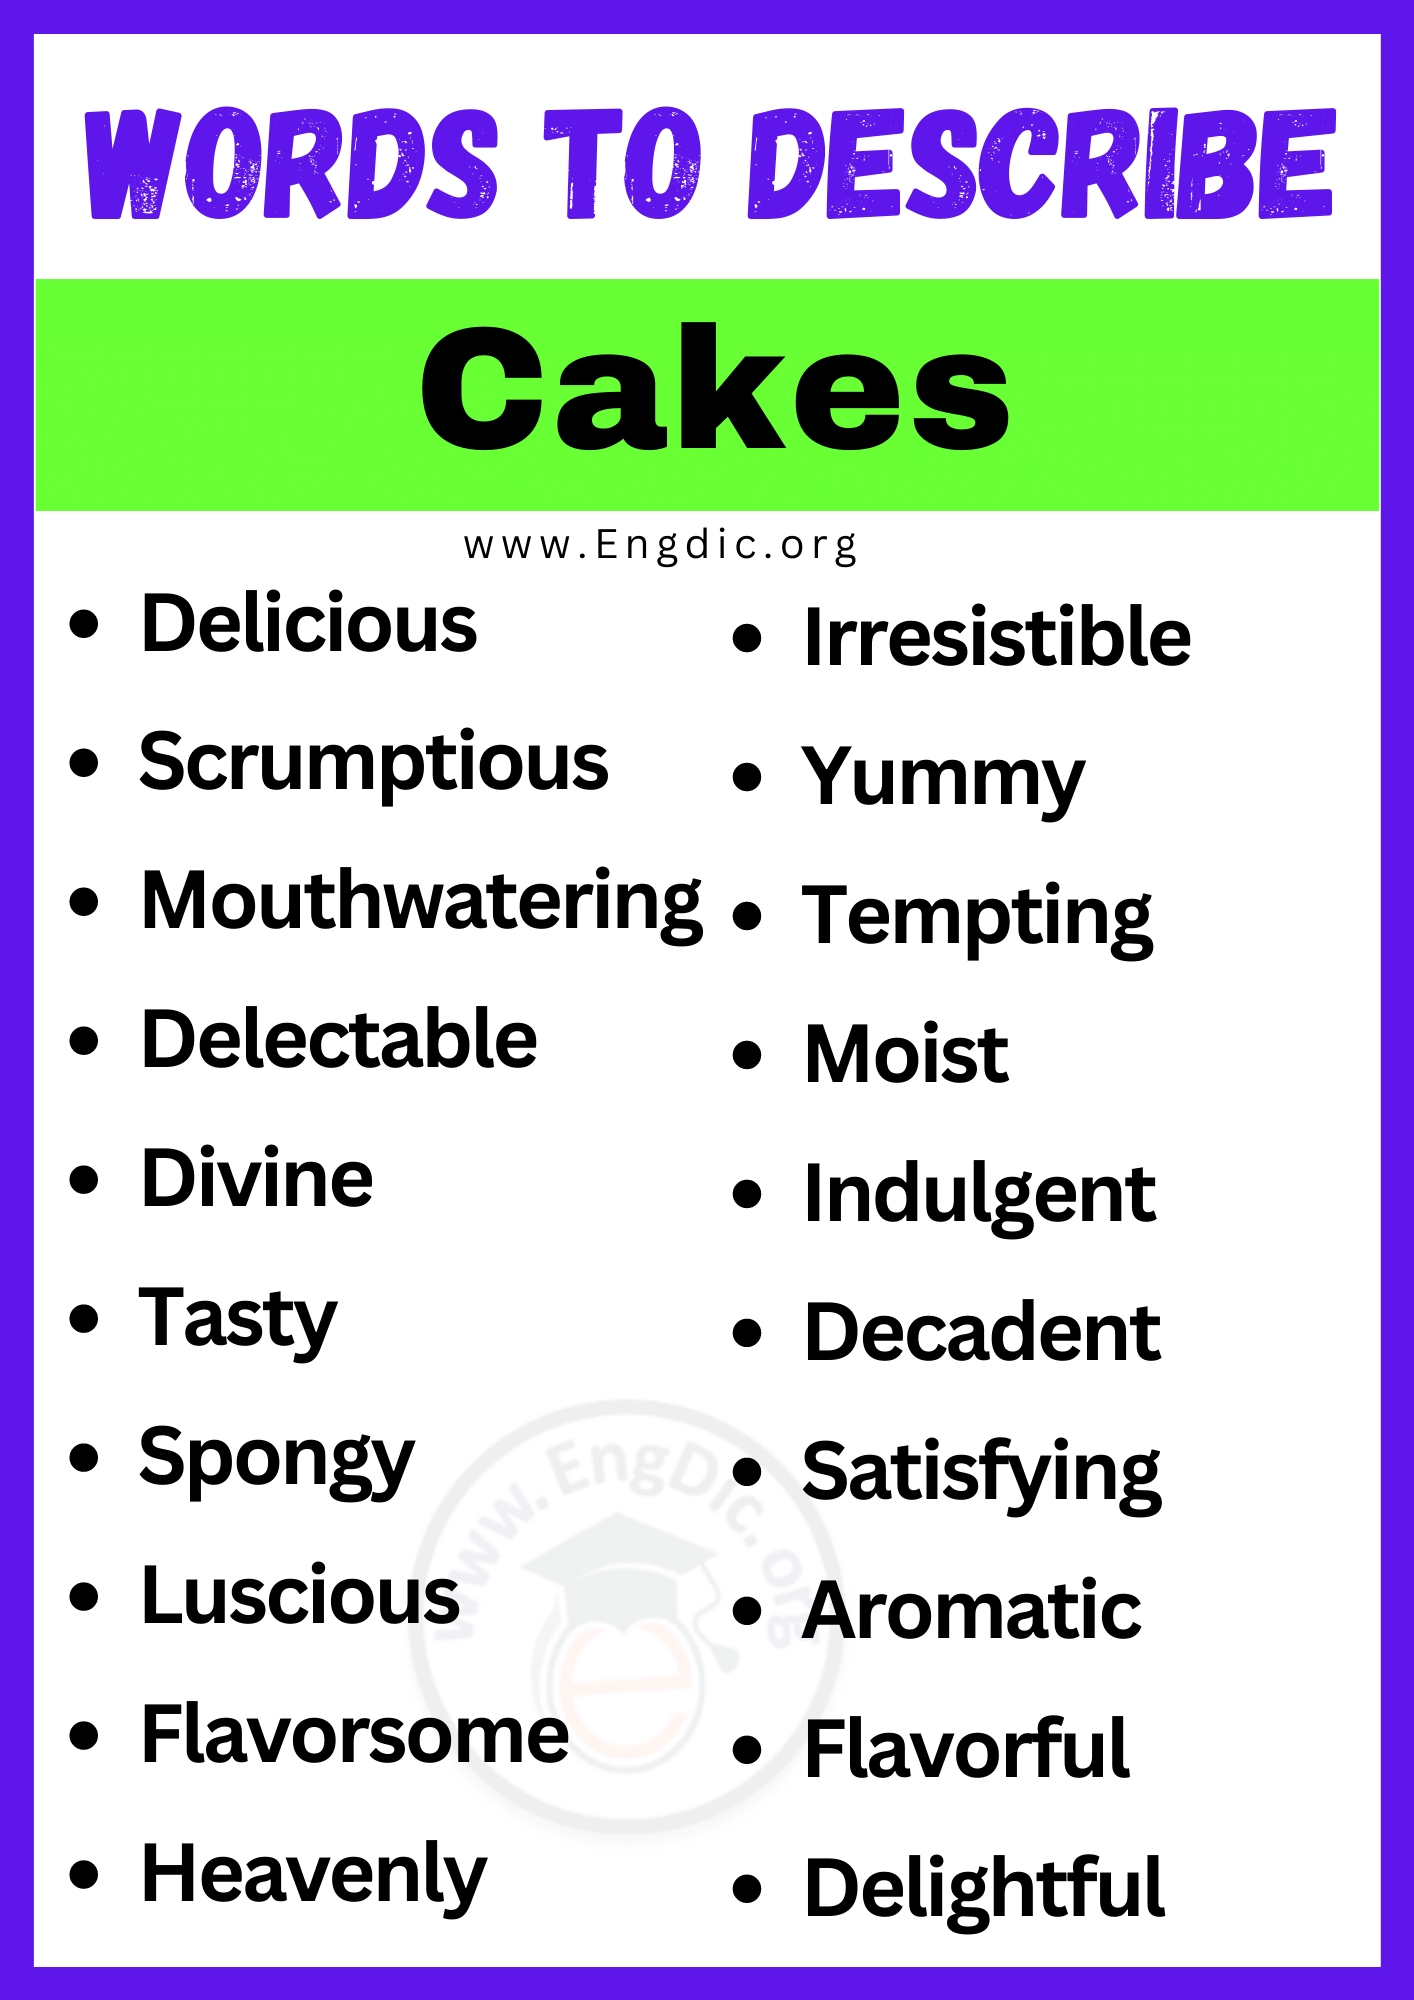 Words to Describe Cakes